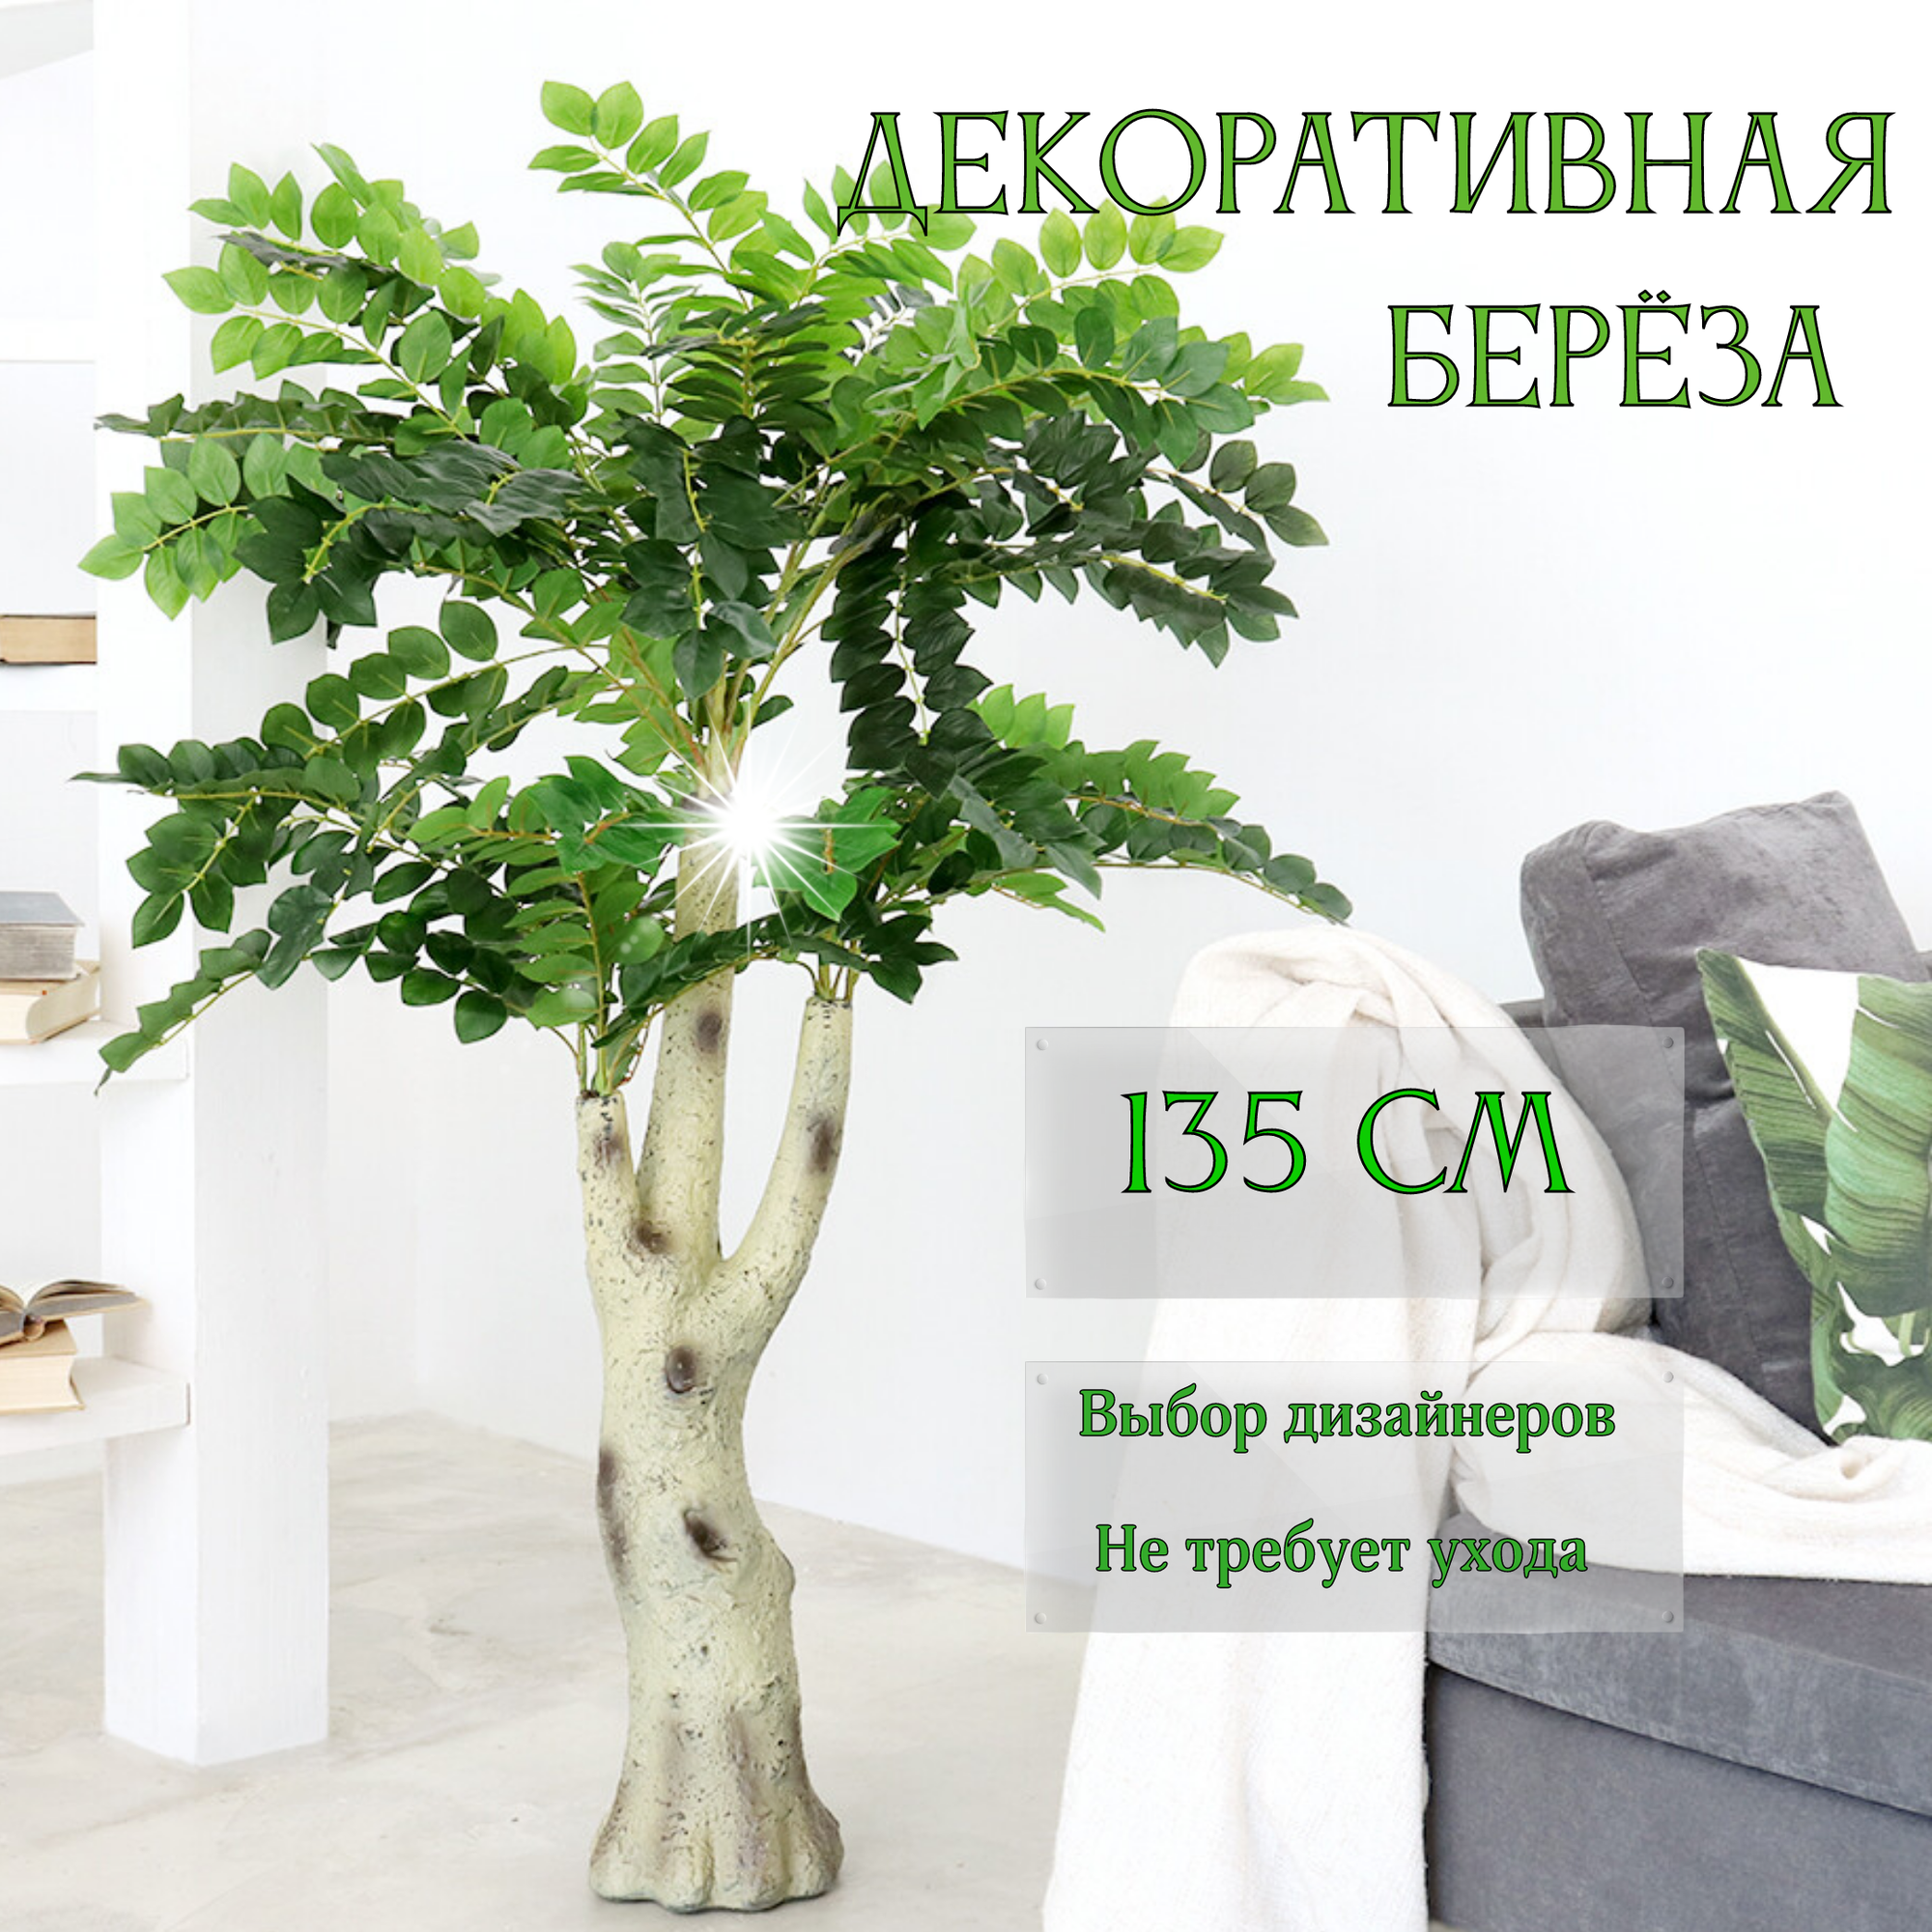 Дерево искусственное для декора интерьера берёза, высокое декоративное растение 135 см